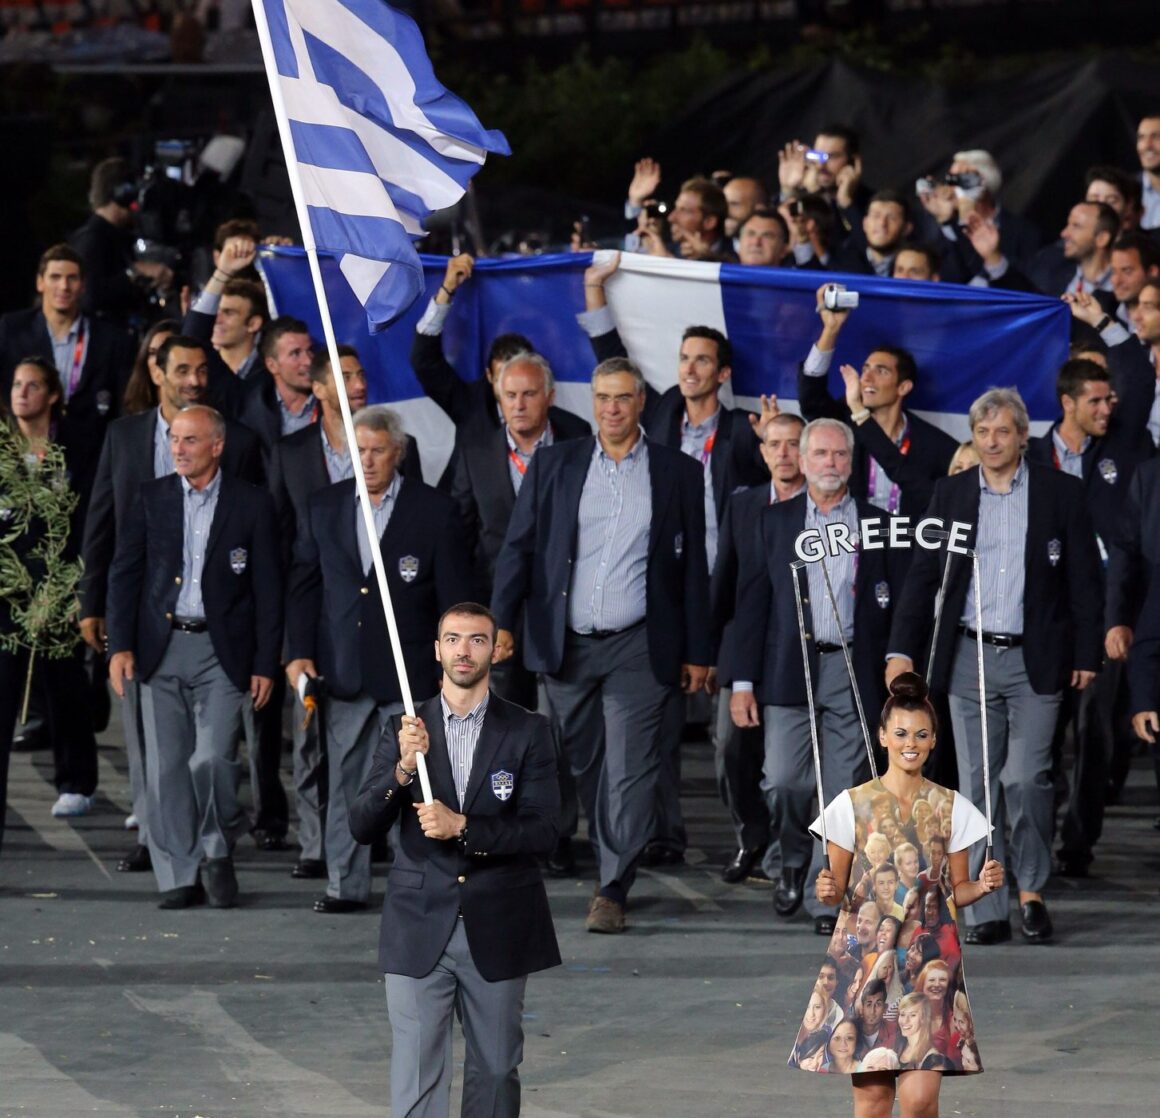 Αλέξανδρος Νικολαΐδης: Ο αποχαιρετισμός του Αλέξη Τσίπρα και του ΣΥΡΙΖΑ στον αθλητή που ήταν εκπρόσωπος Τύπου του κόμματος